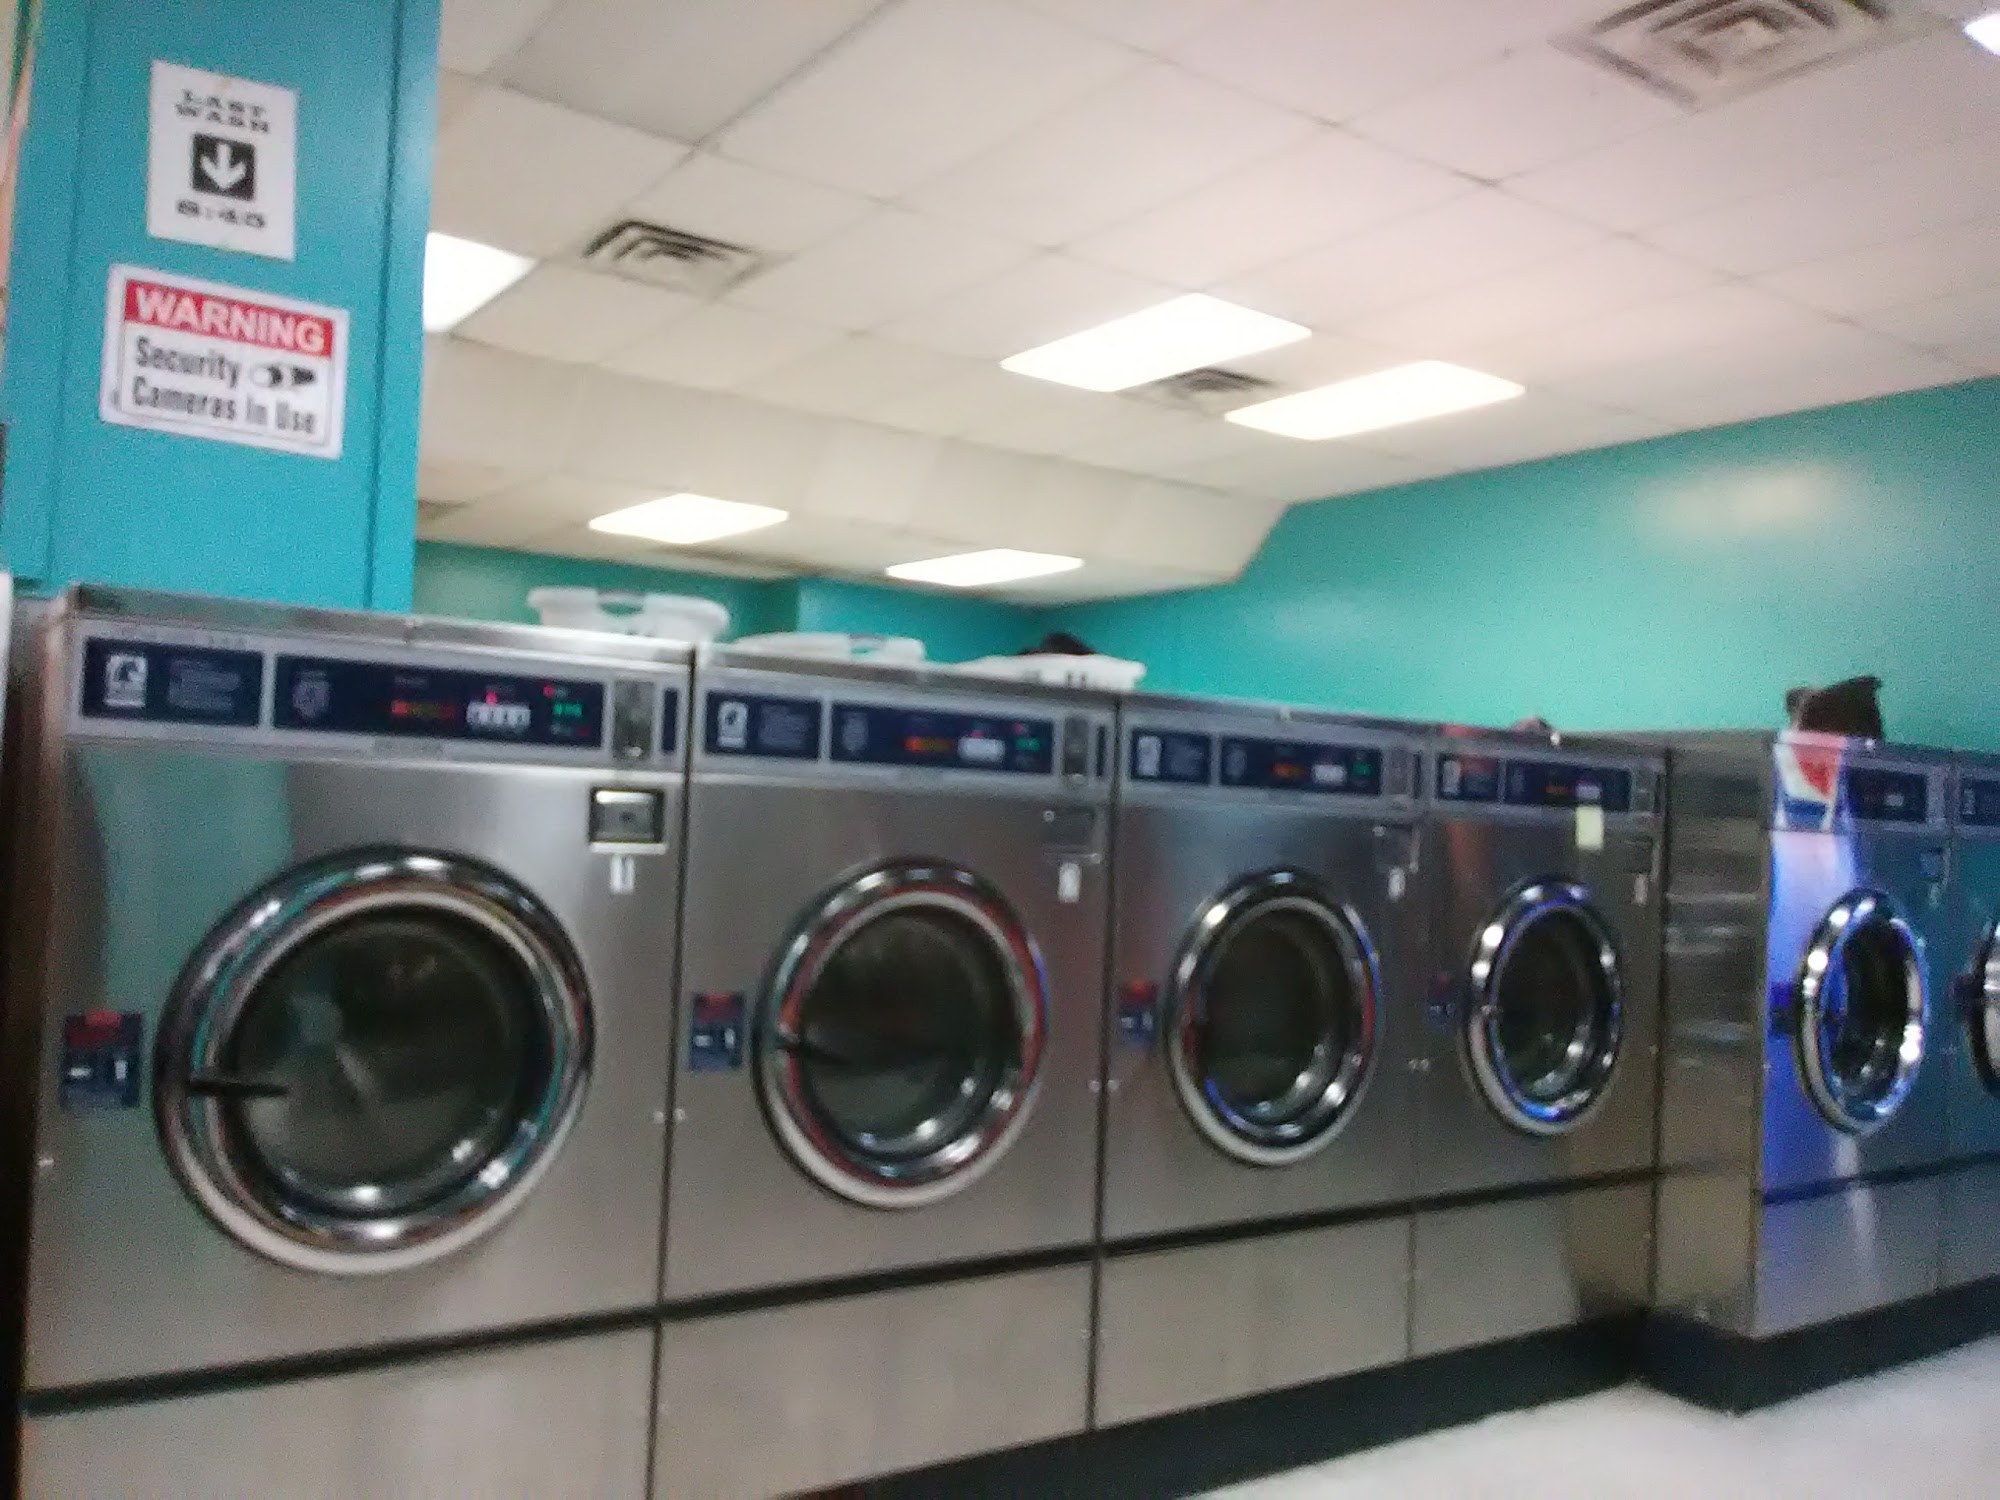 South Square Laundromat, LLC